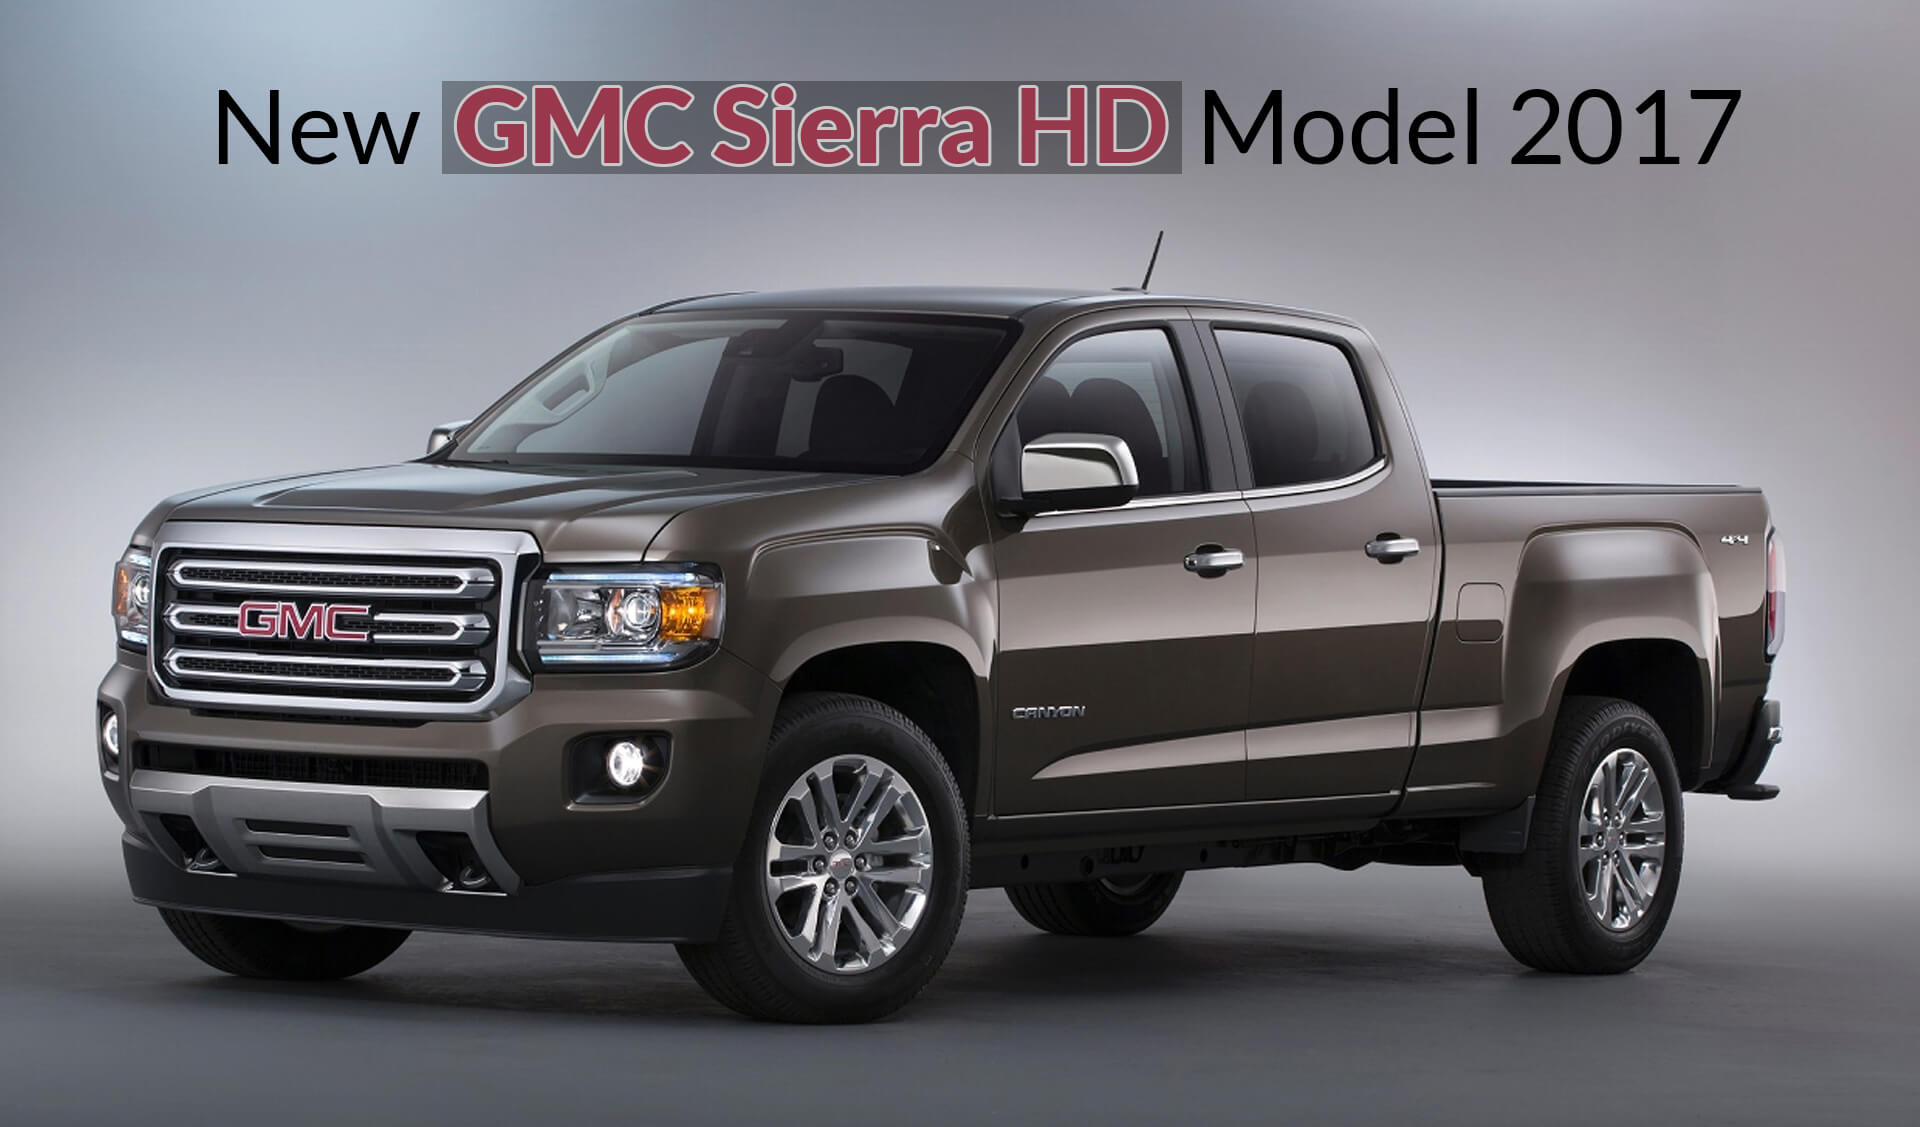 New GMC Sierra HD Model 2017